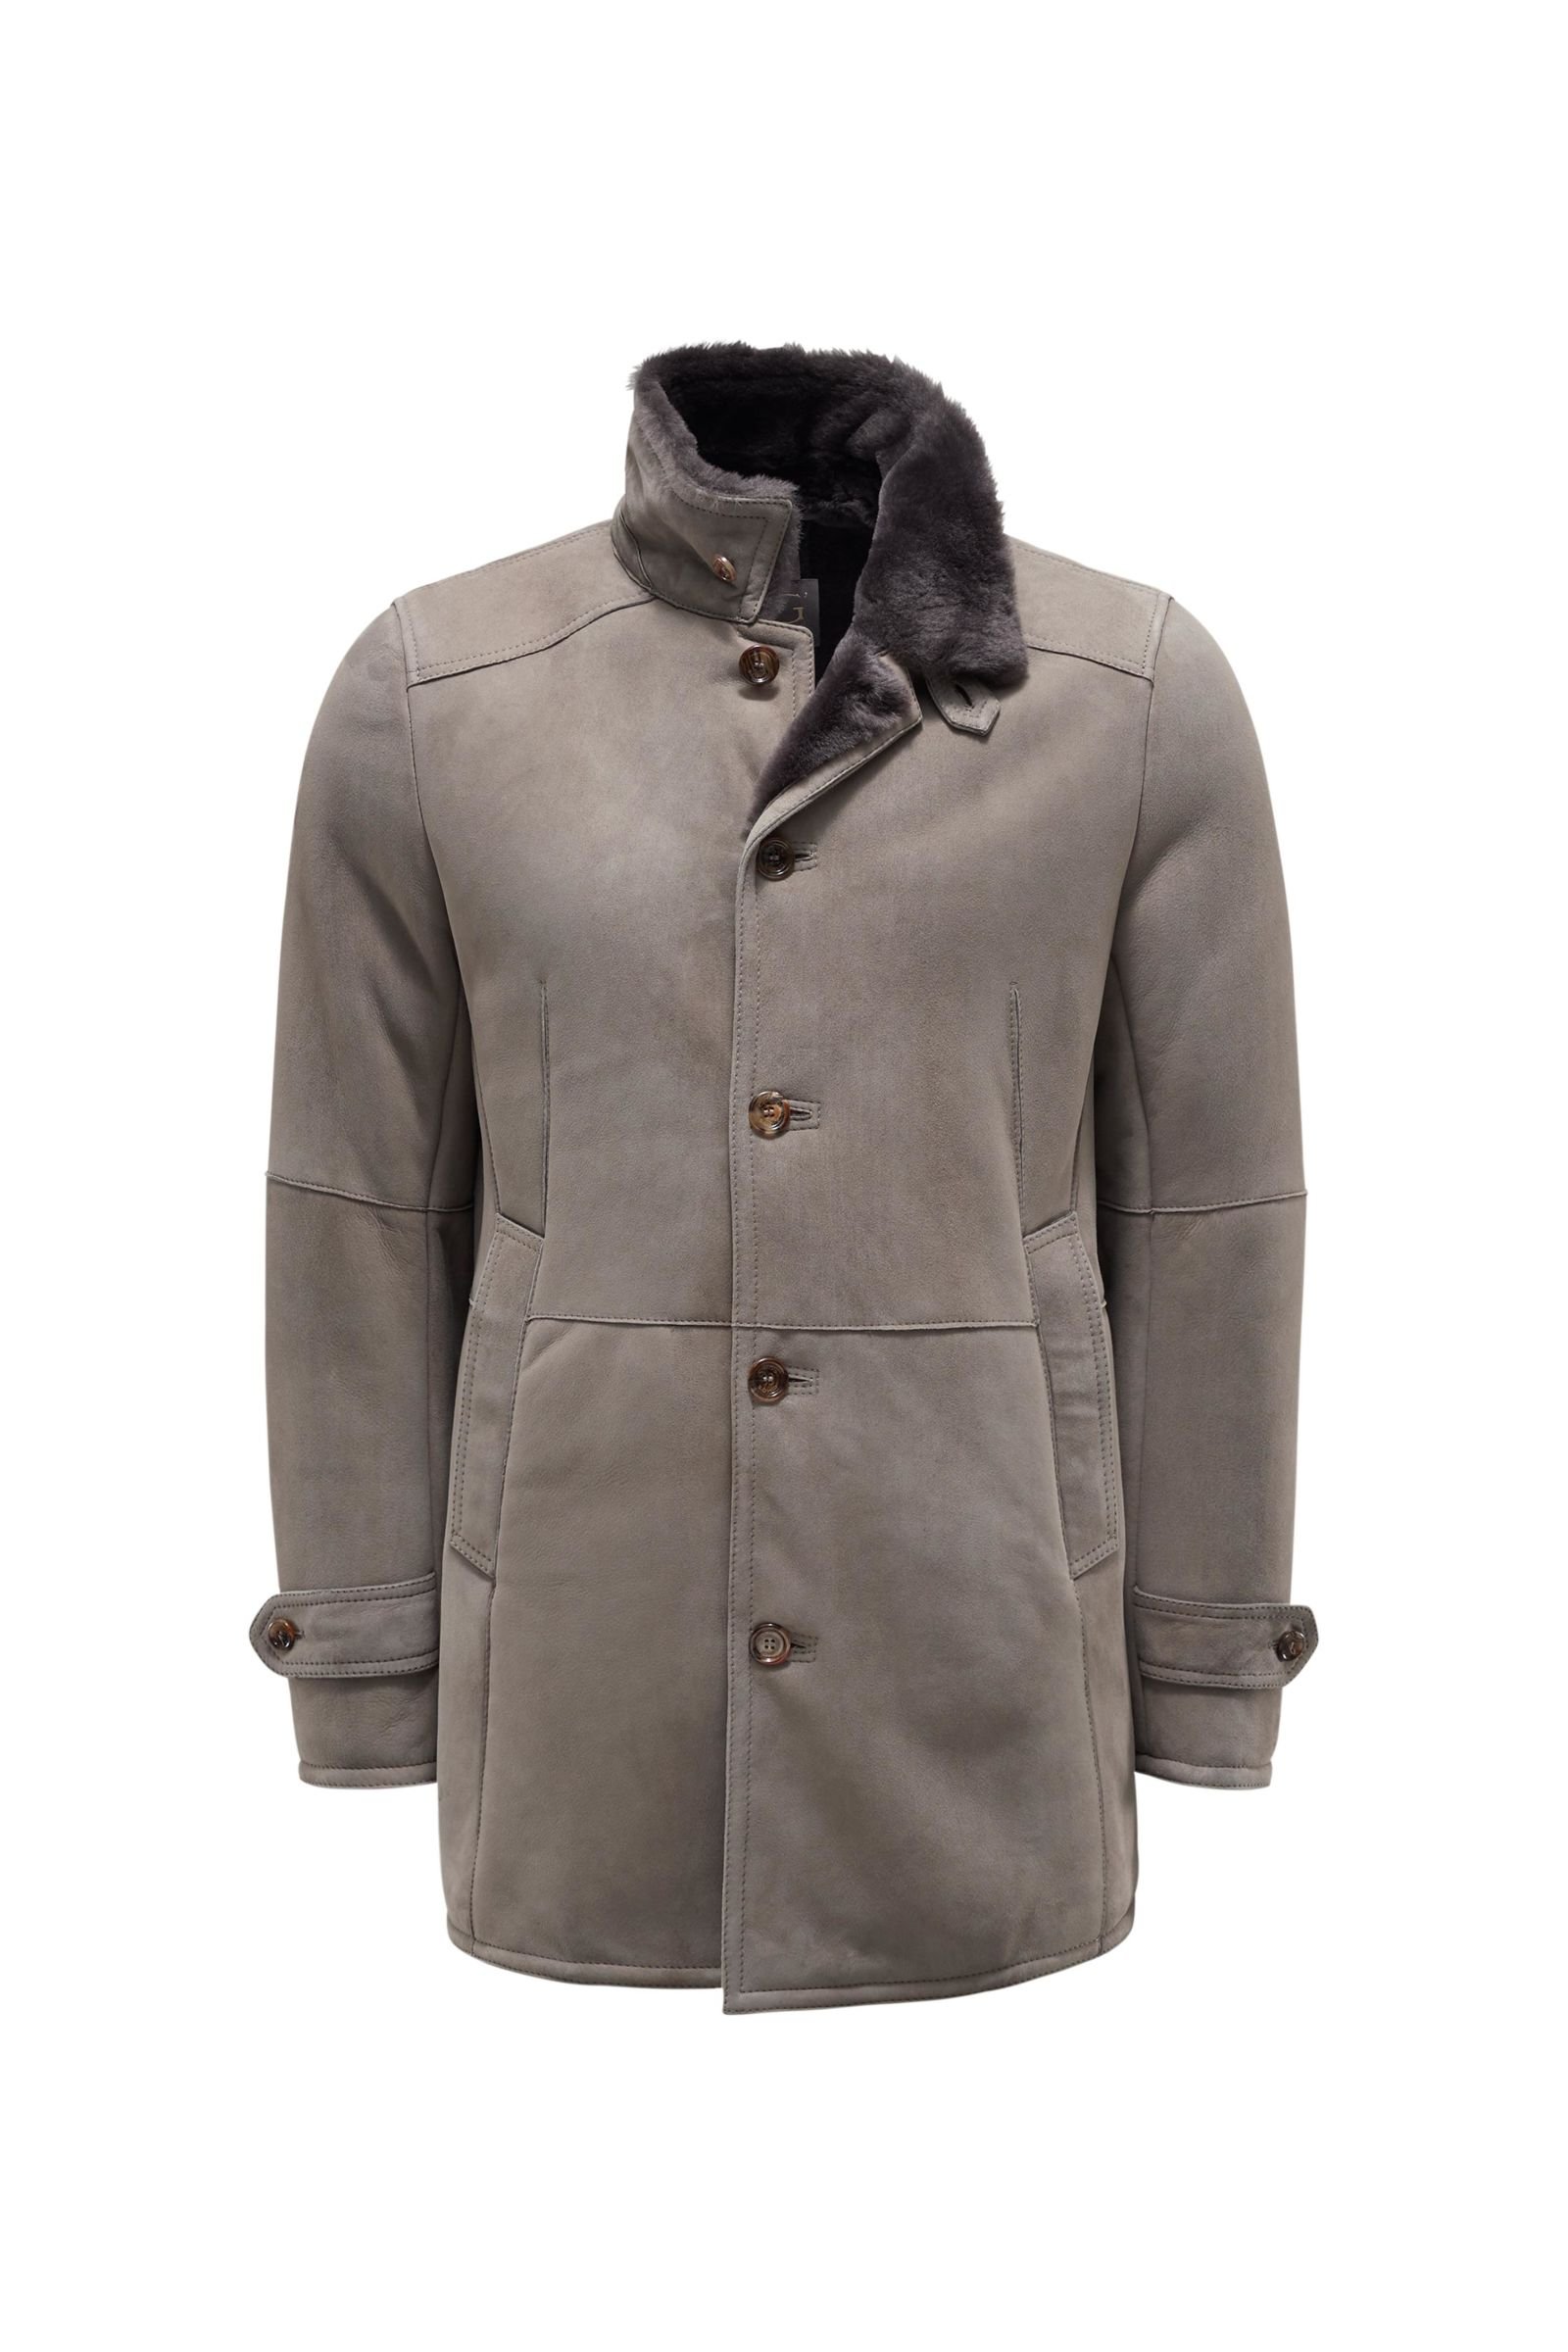 Shearling jacket grey-brown